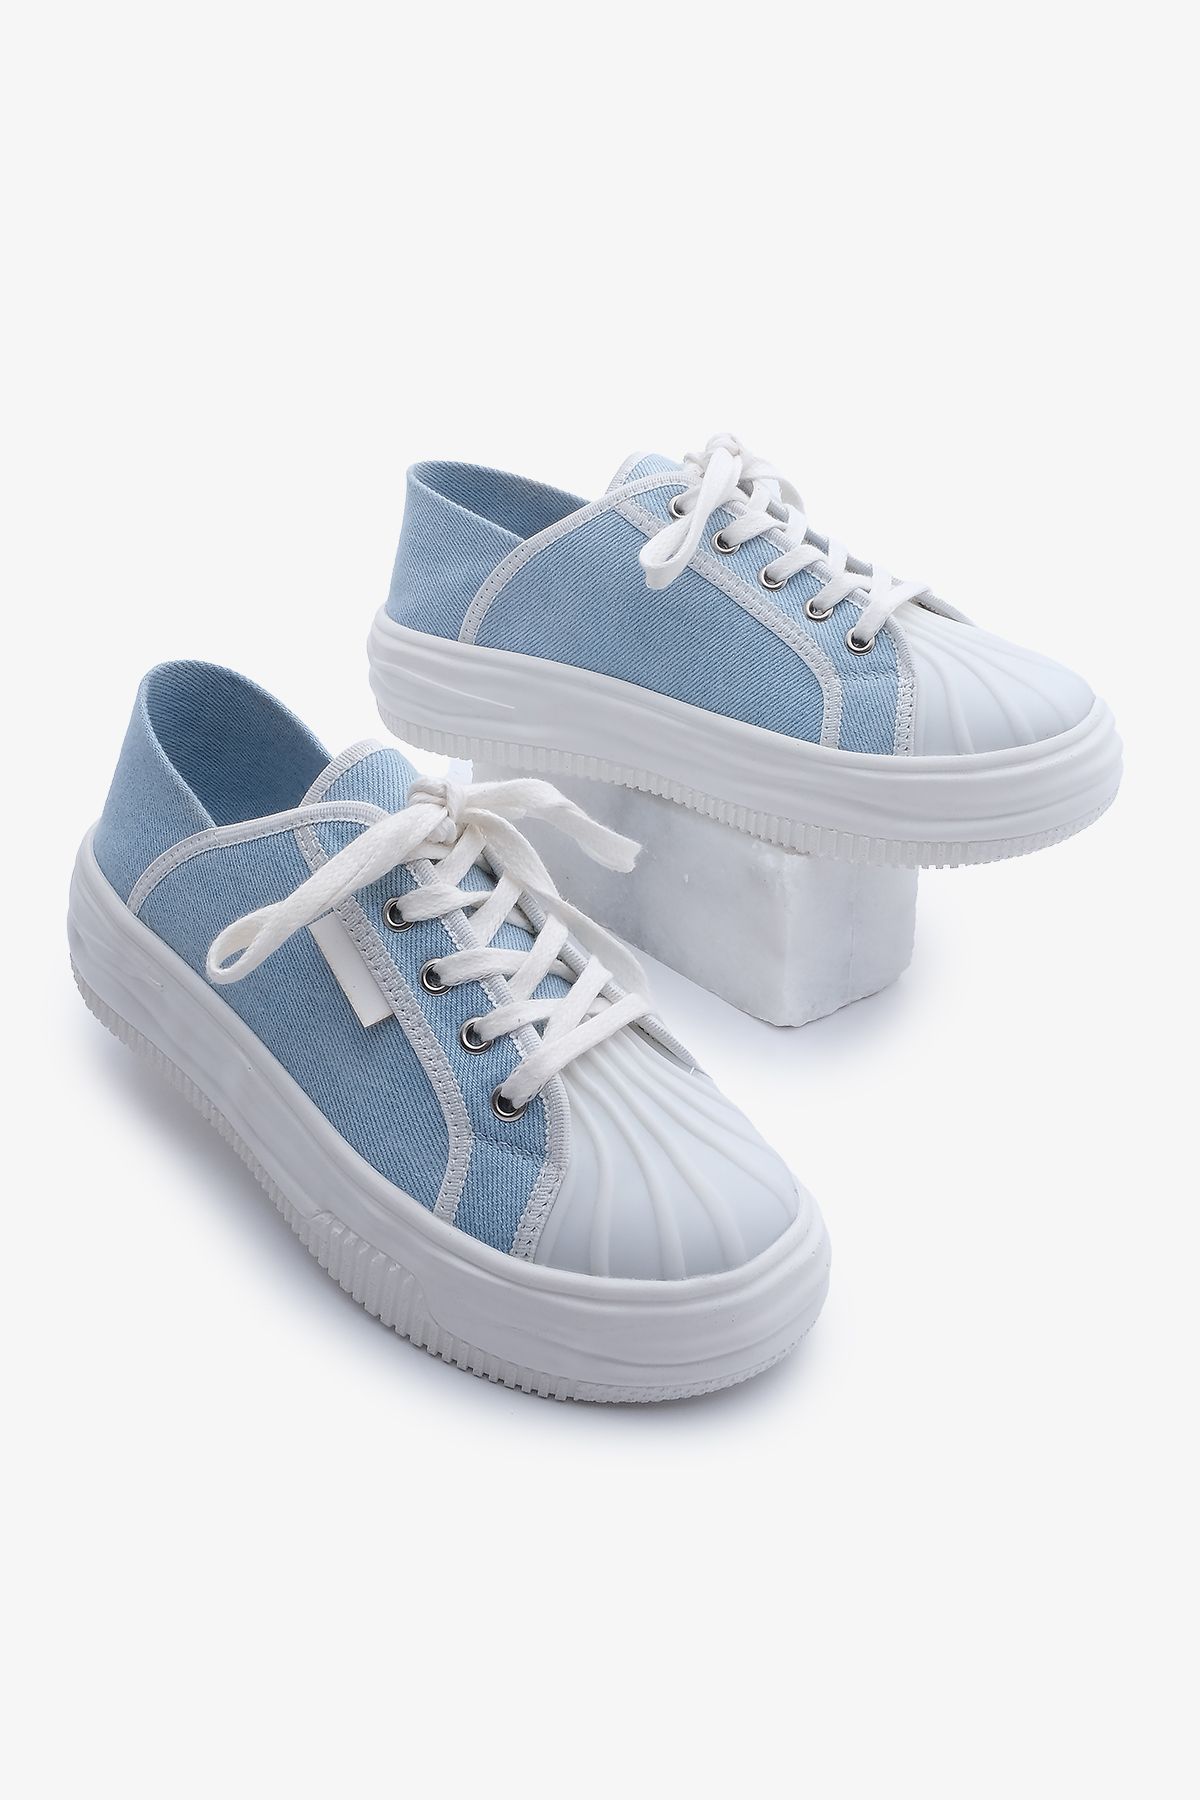 Marjin Kadın Sneaker Kalın Taban Bağcıklı Spor Ayakkabı Arnes Mavi Kot